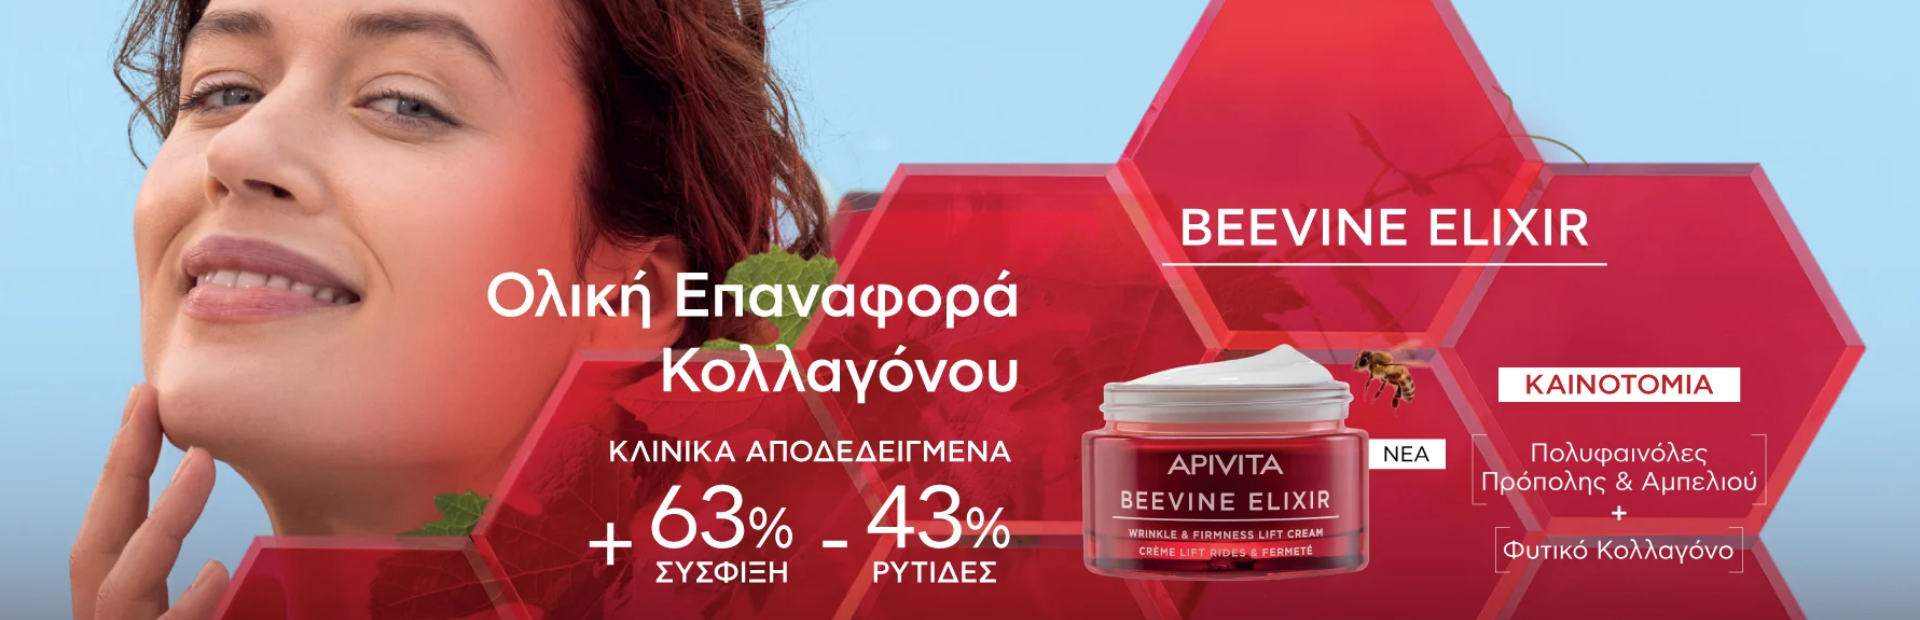 Apivita - Beevine Elixir